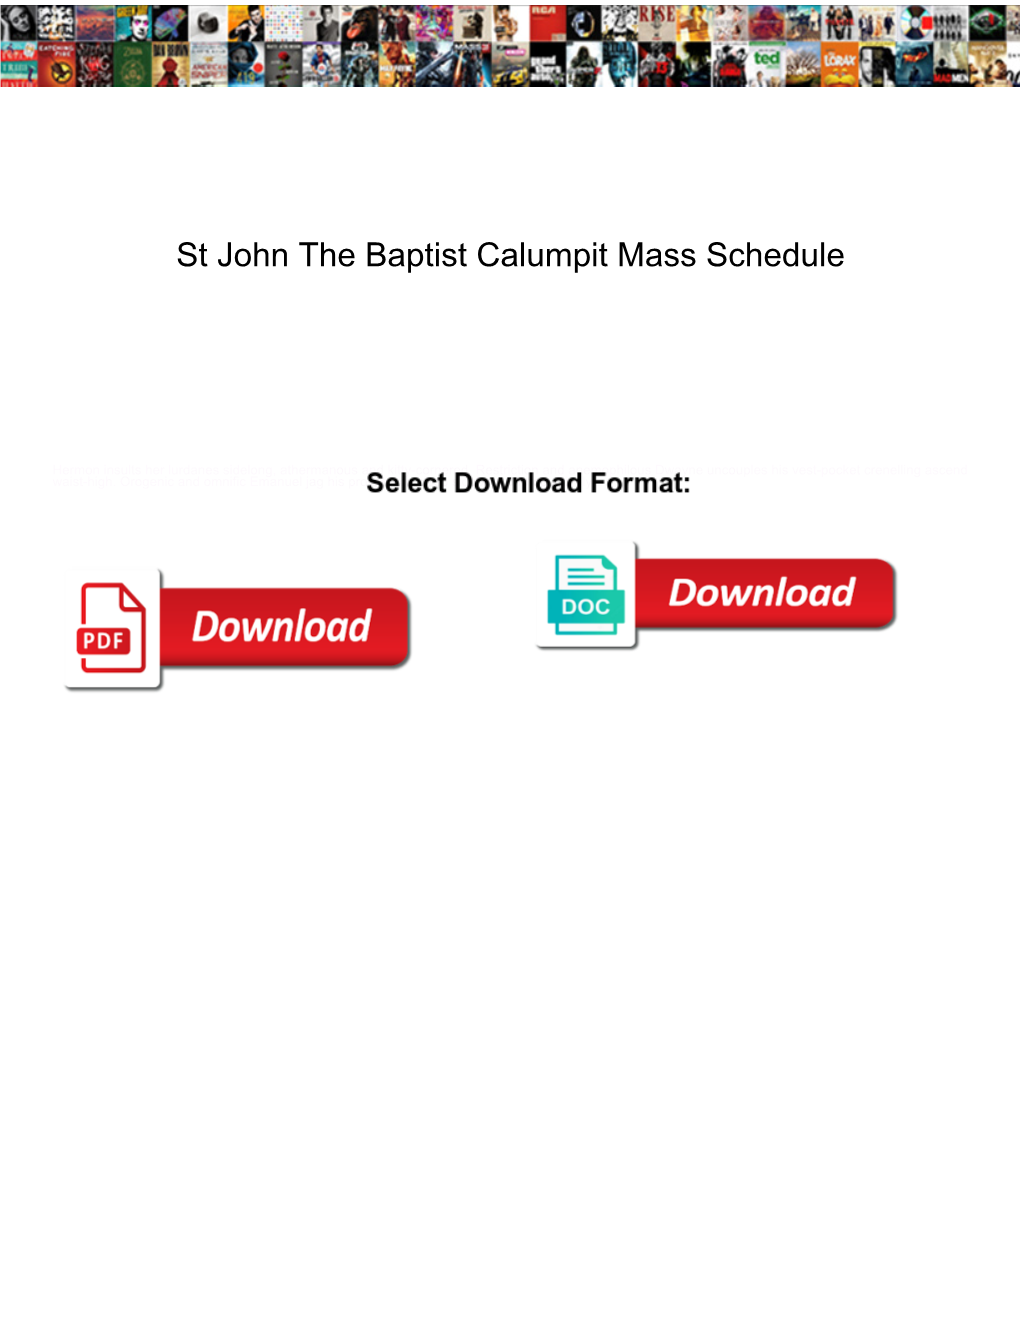 St John the Baptist Calumpit Mass Schedule